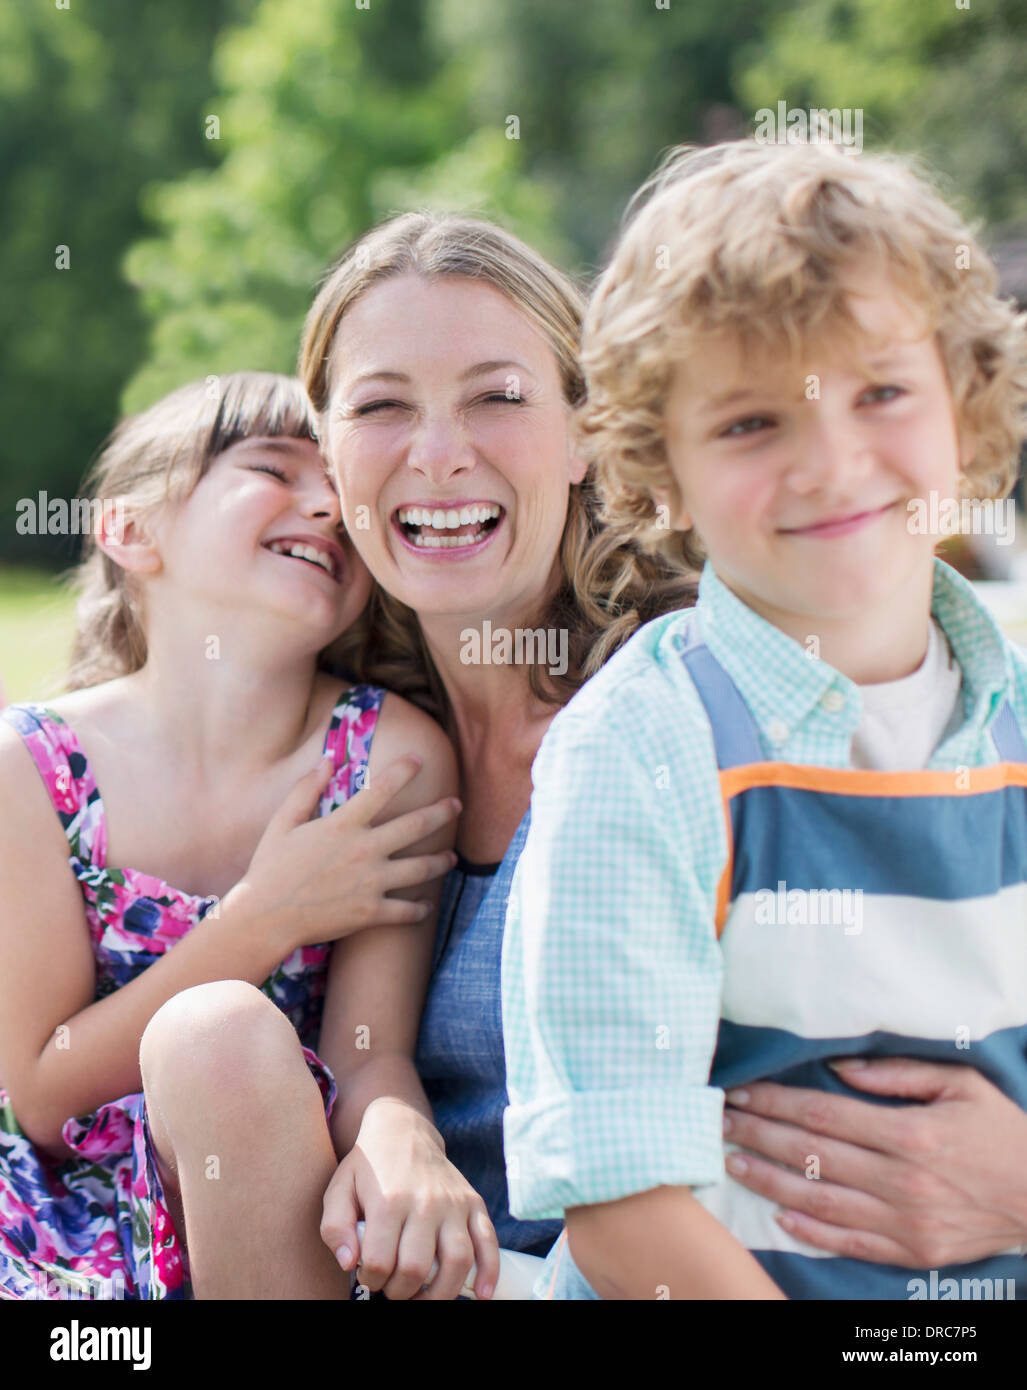 Mère et enfants smiling outdoors Banque D'Images